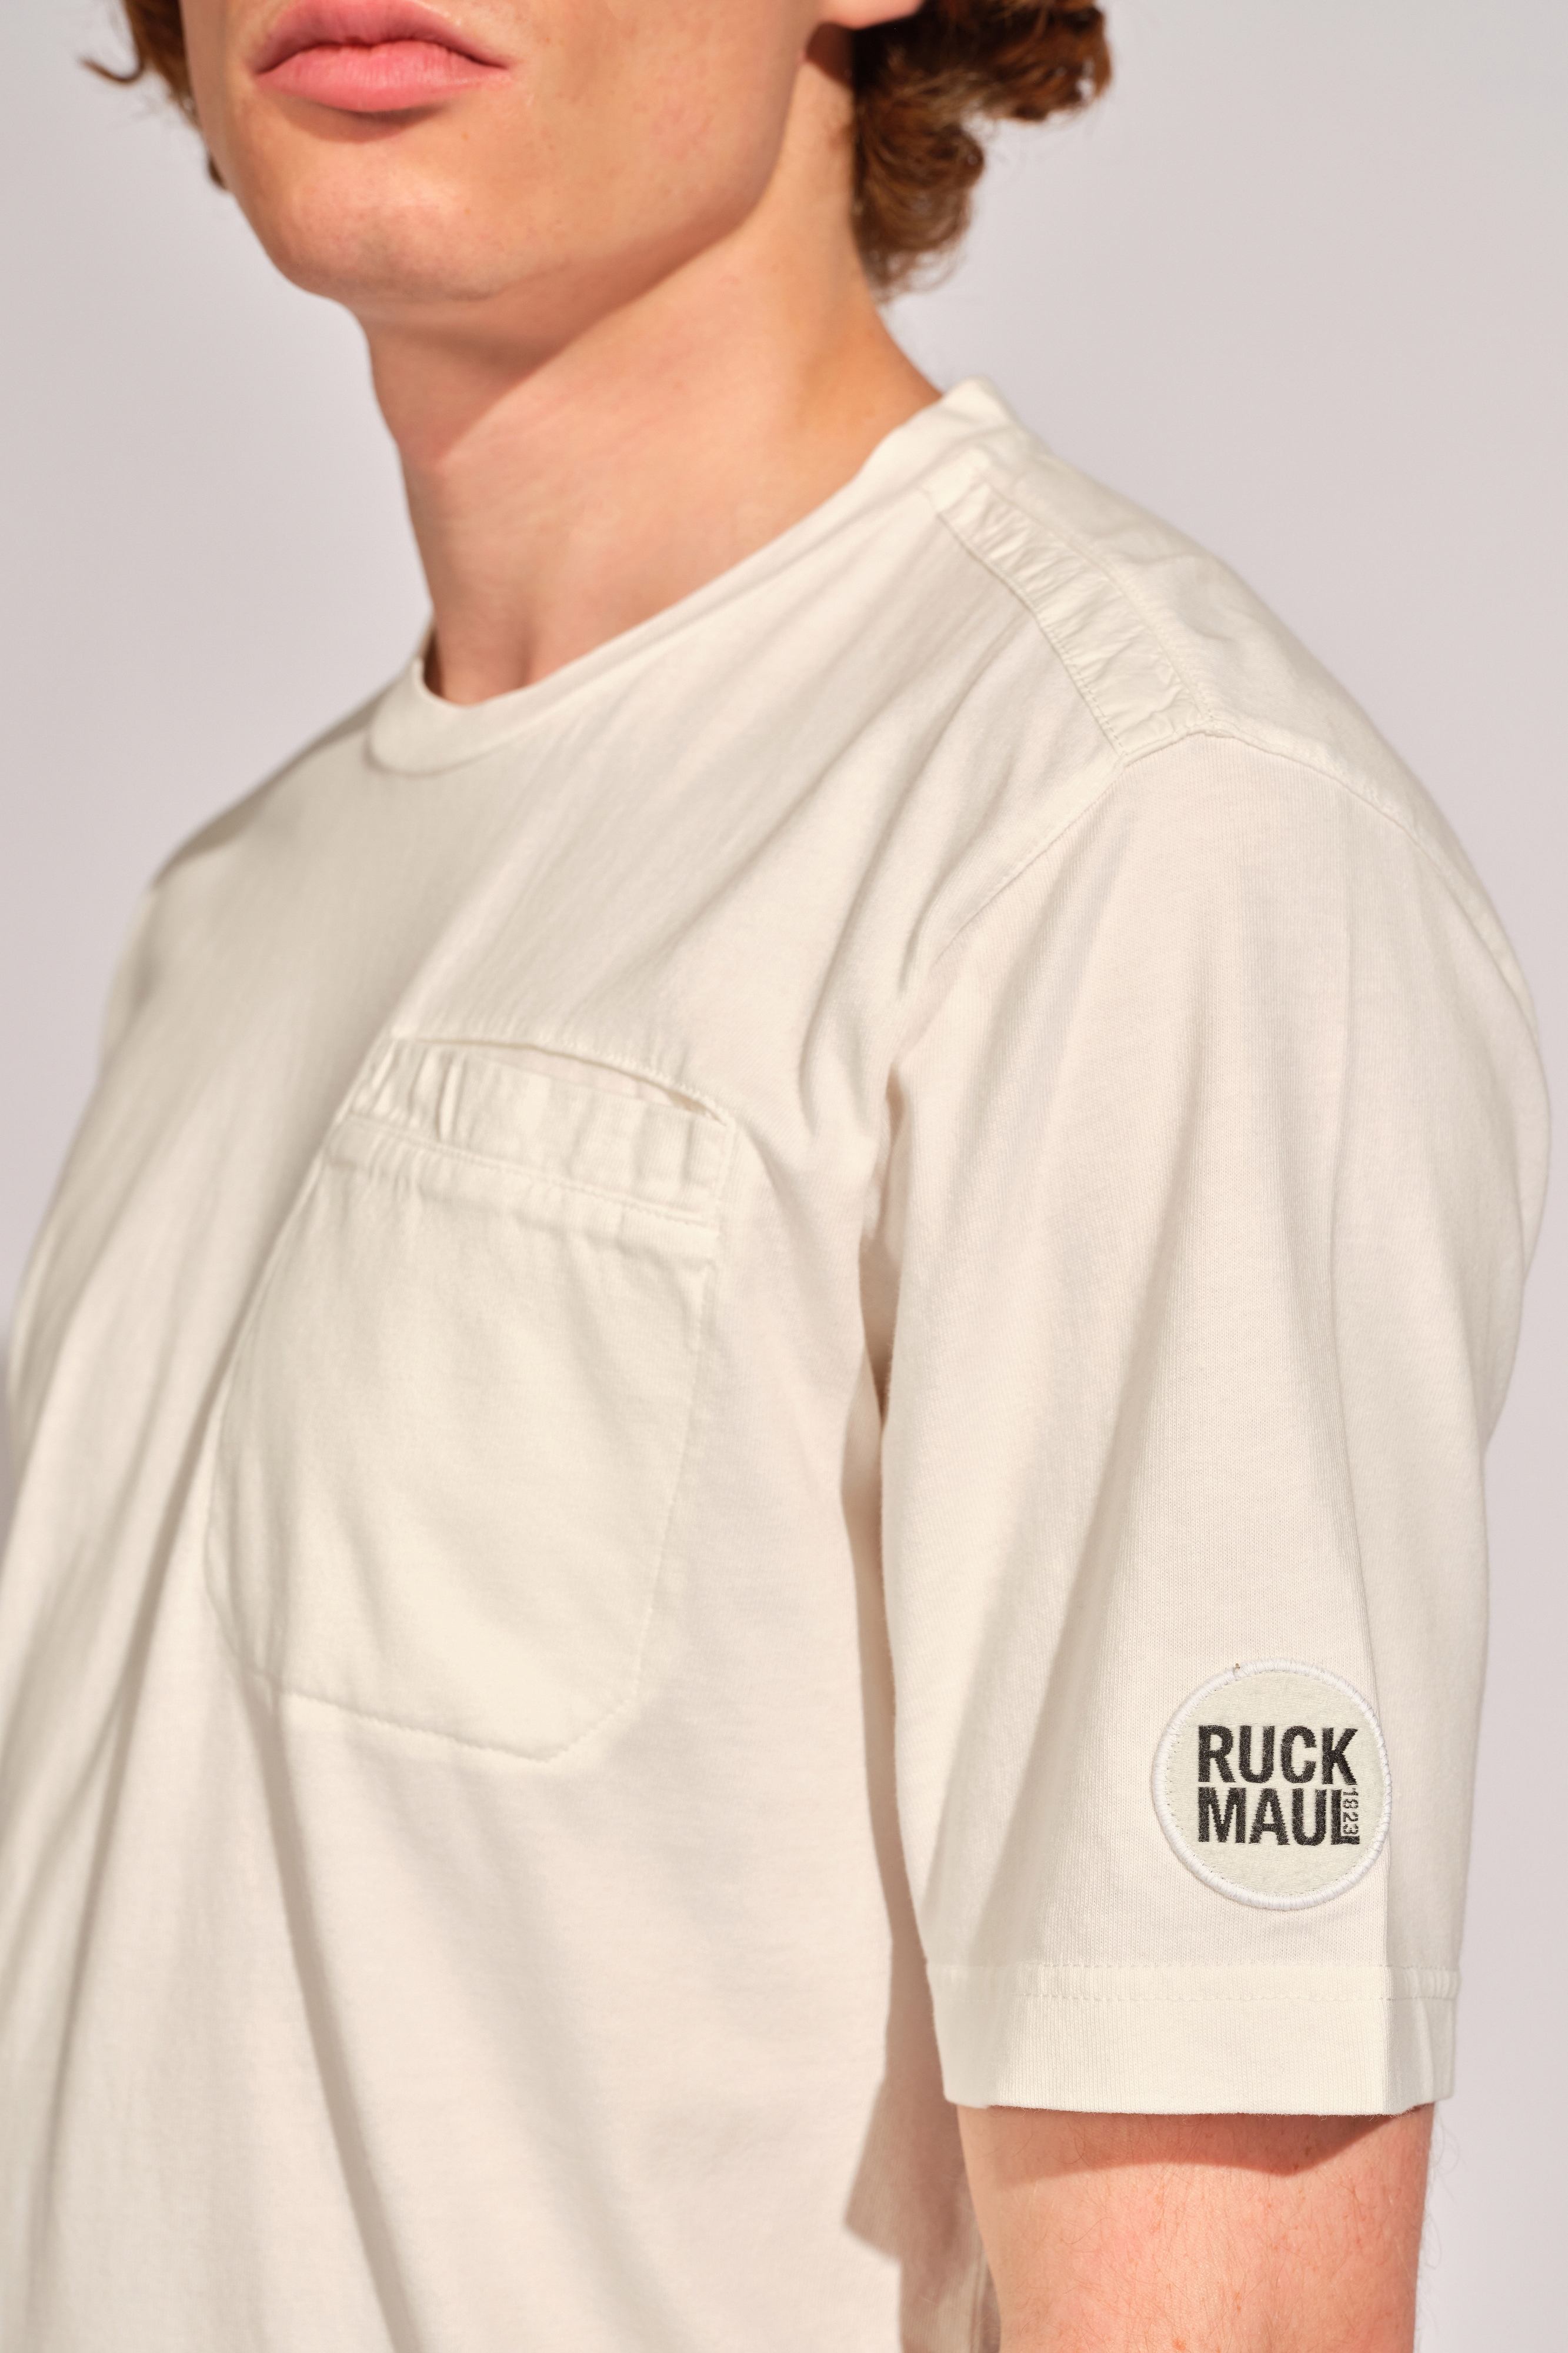 Dunkelblond Mann T-shirt